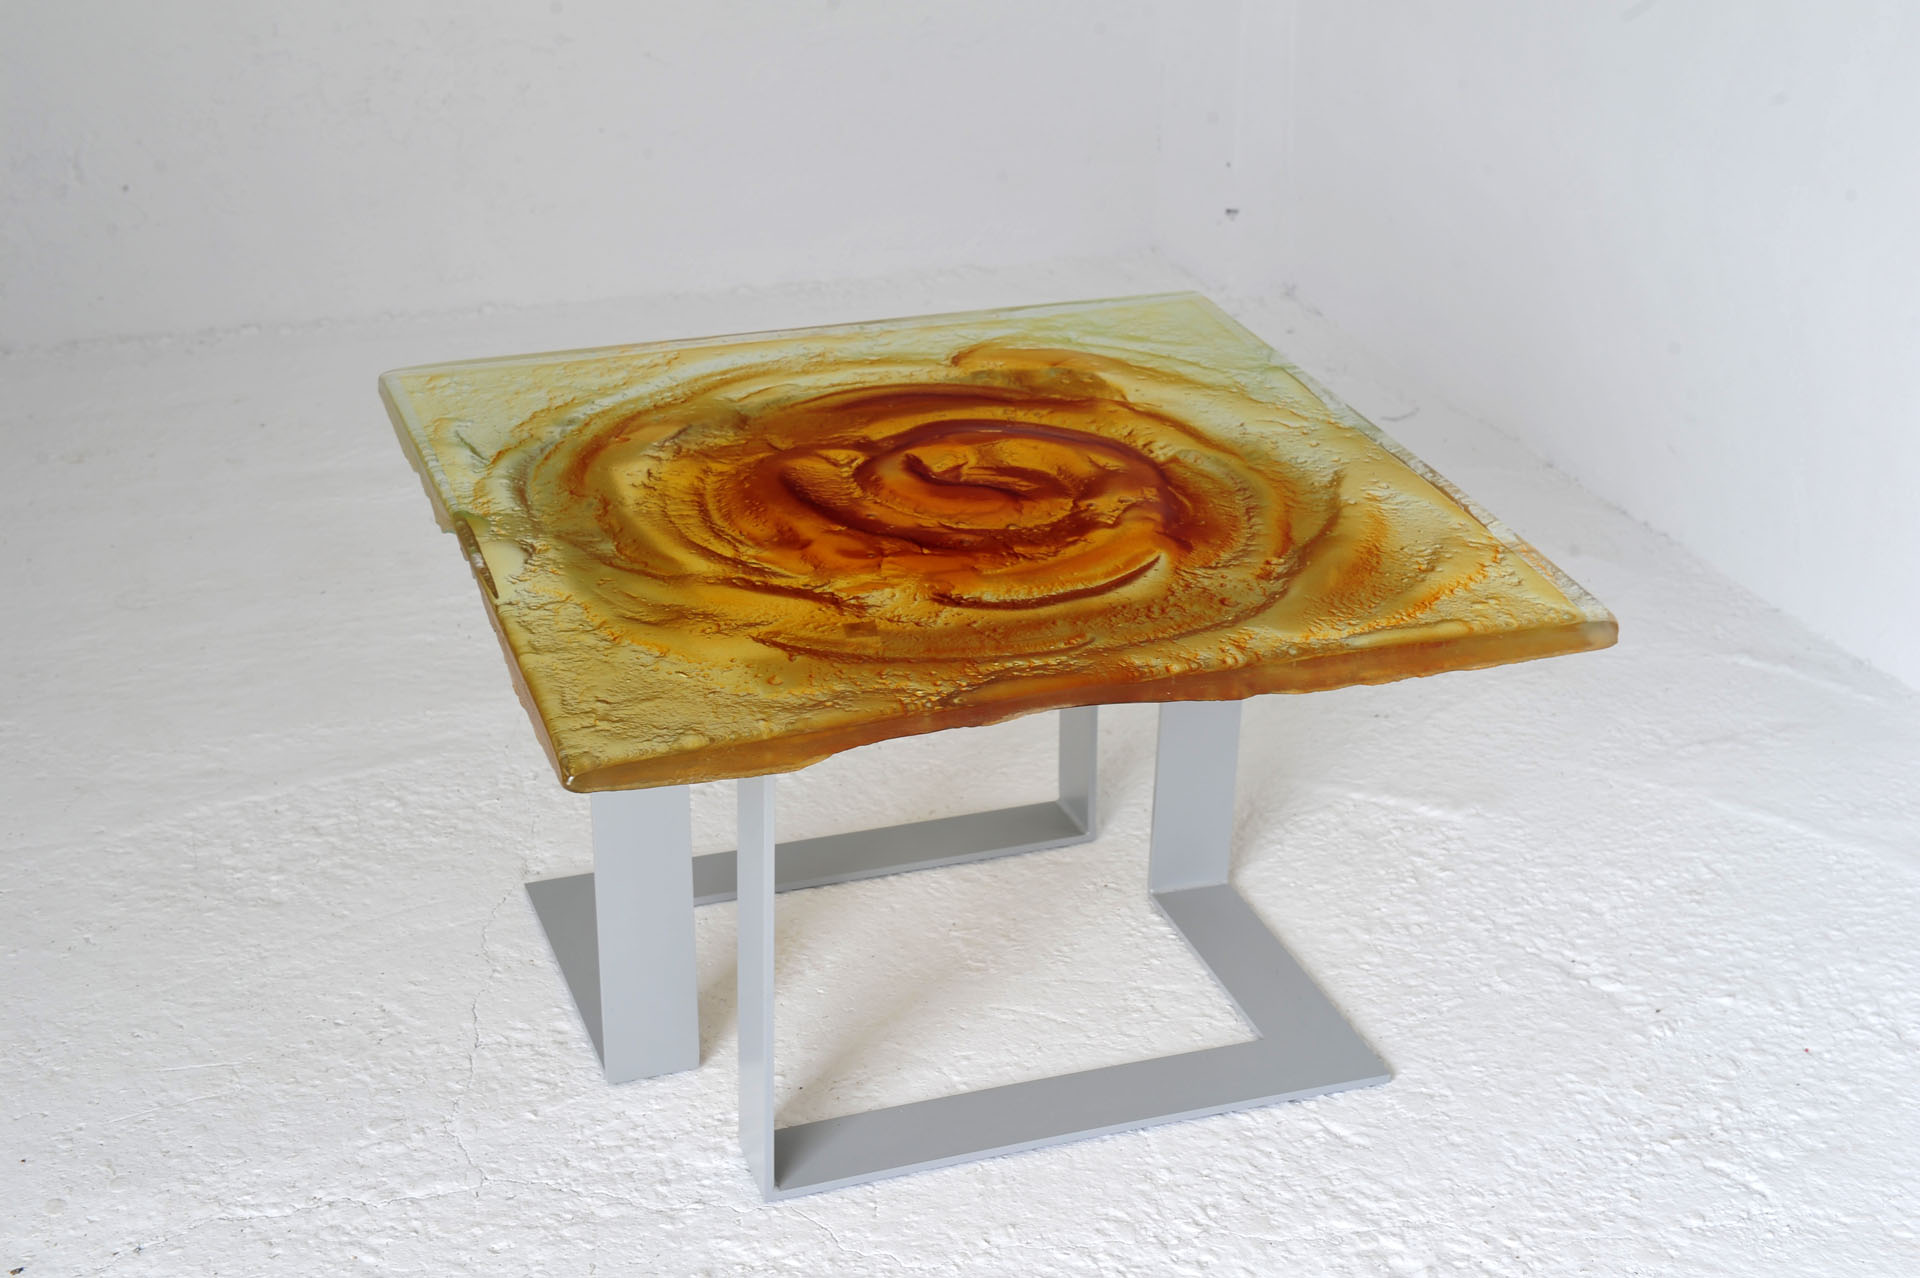 Archiglass Applied Arts Glass Table Stolik Szklany Wulkan Miodowy Szary 80x80